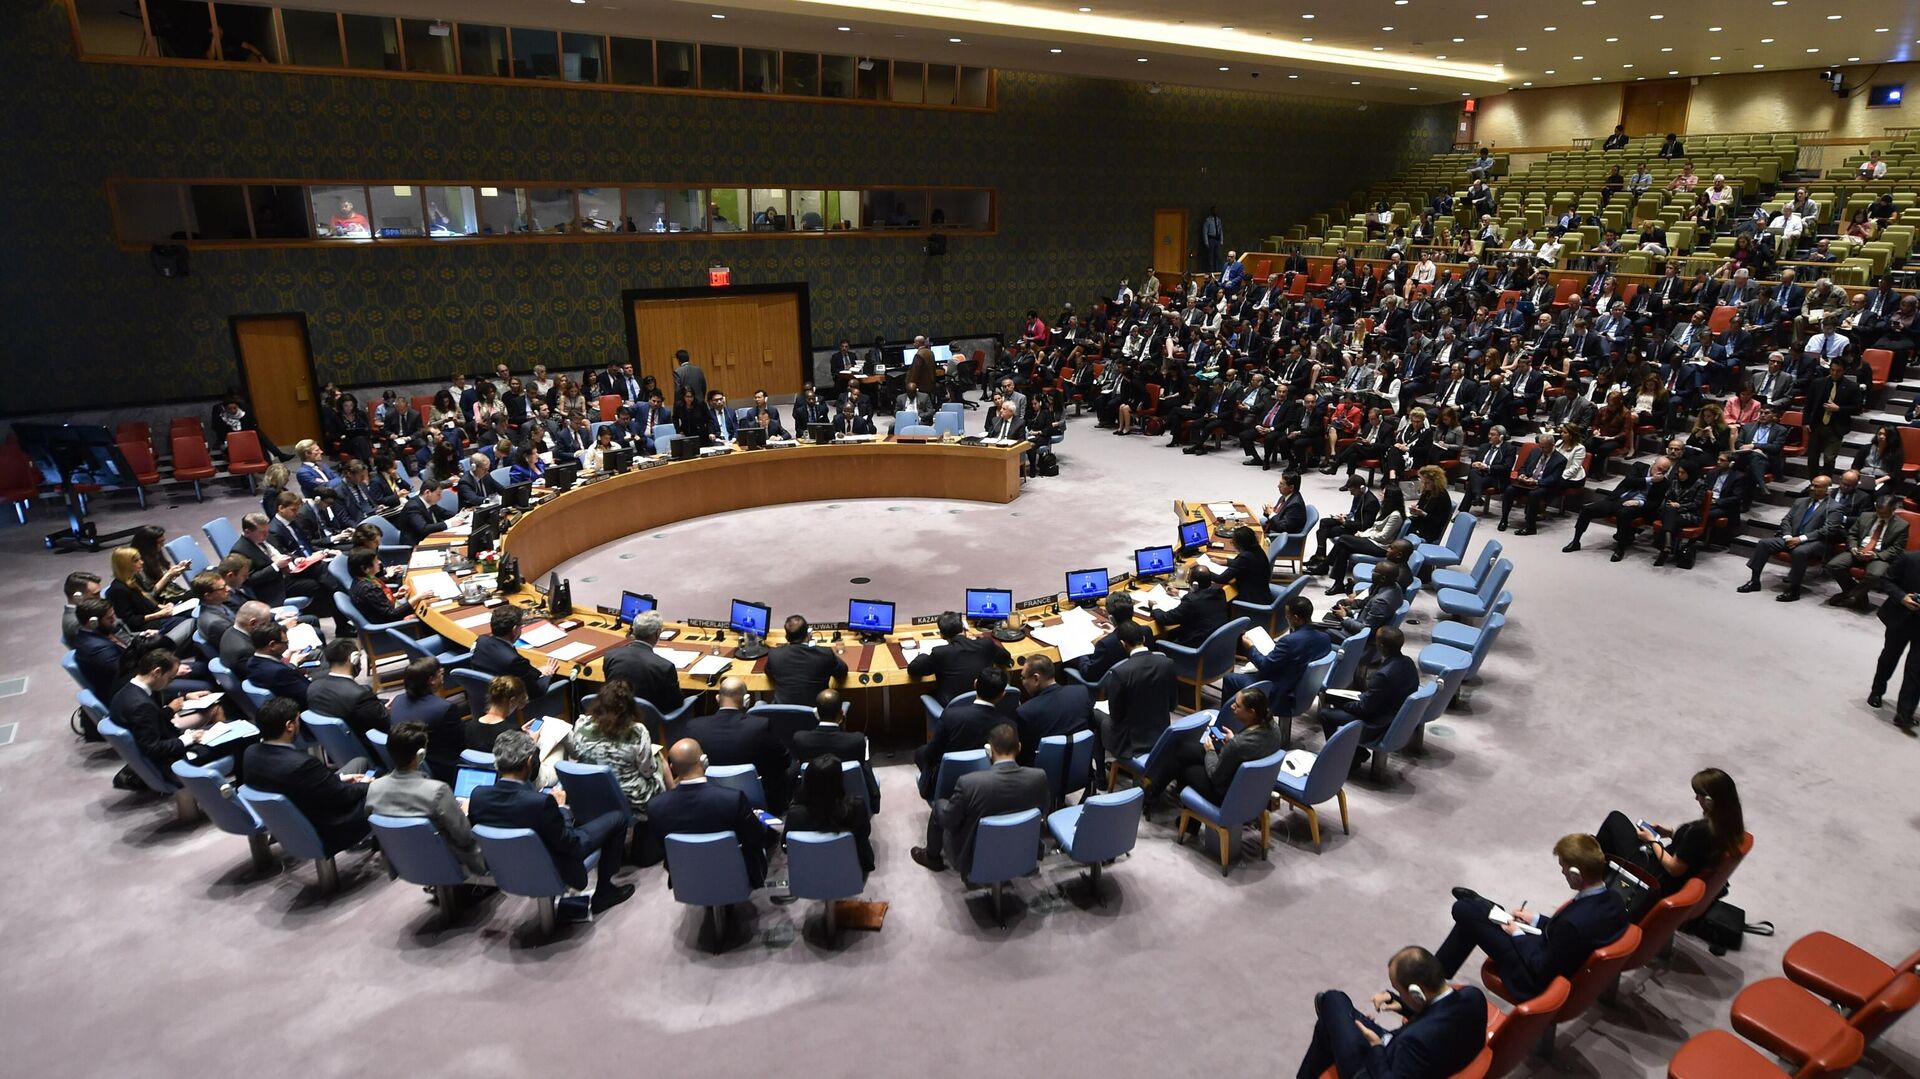 Заседание Совета Безопасности ООН в Нью-Йорке. 15 мая 2018 - РИА Новости, 1920, 27.11.2019